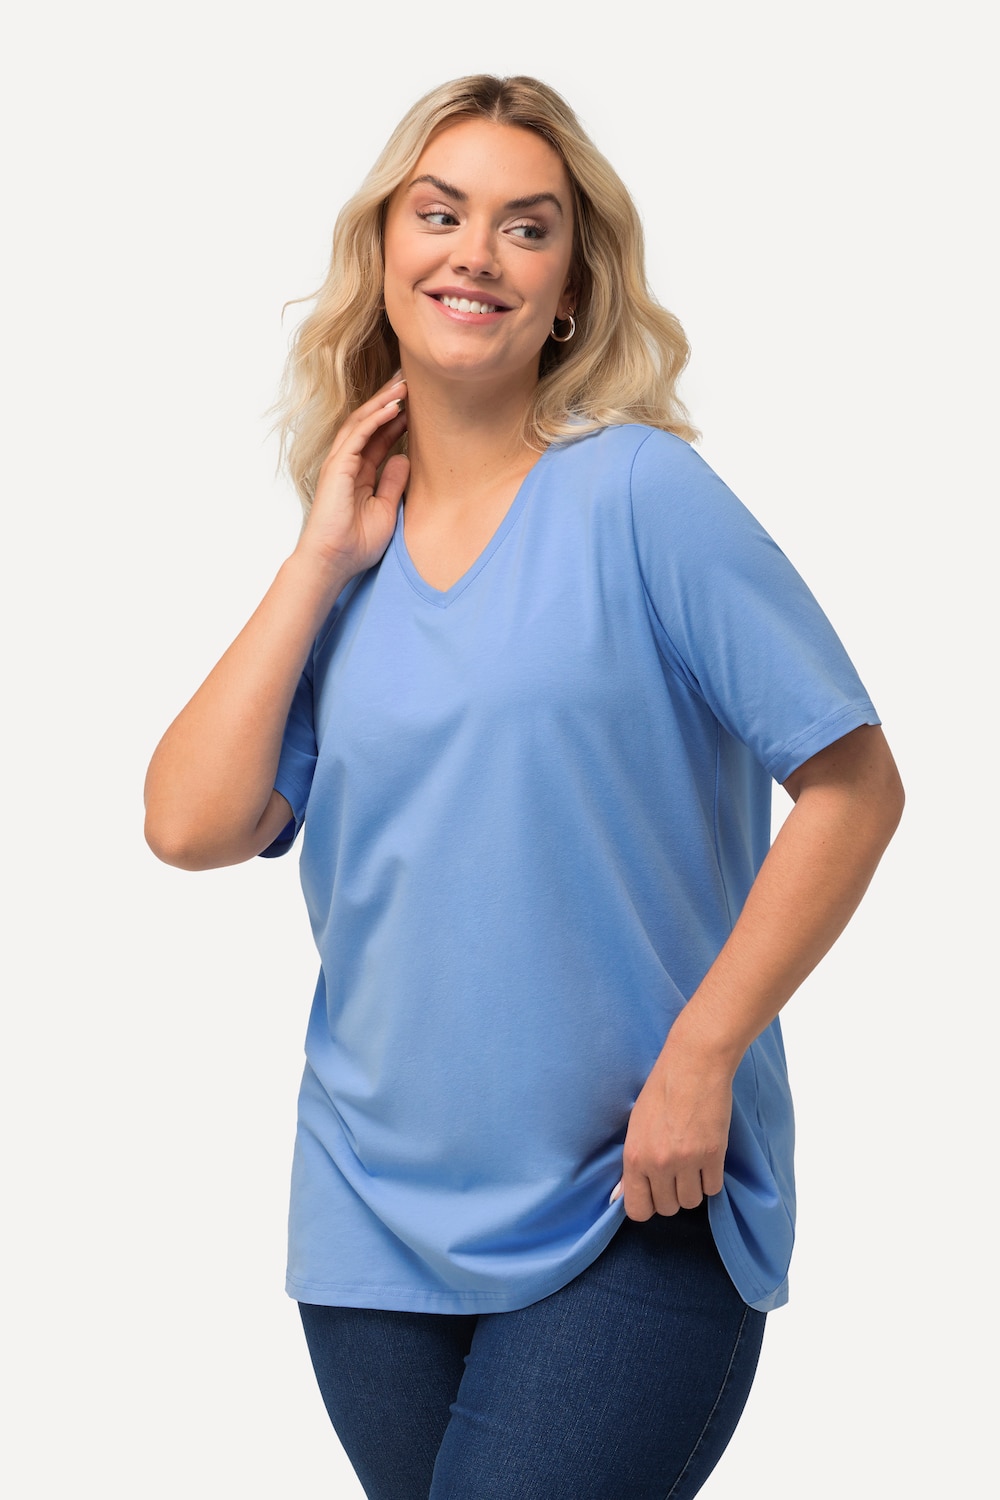 Grote Maten T-shirt, Dames, blauw, Maat: 54/56, Katoen, Ulla Popken